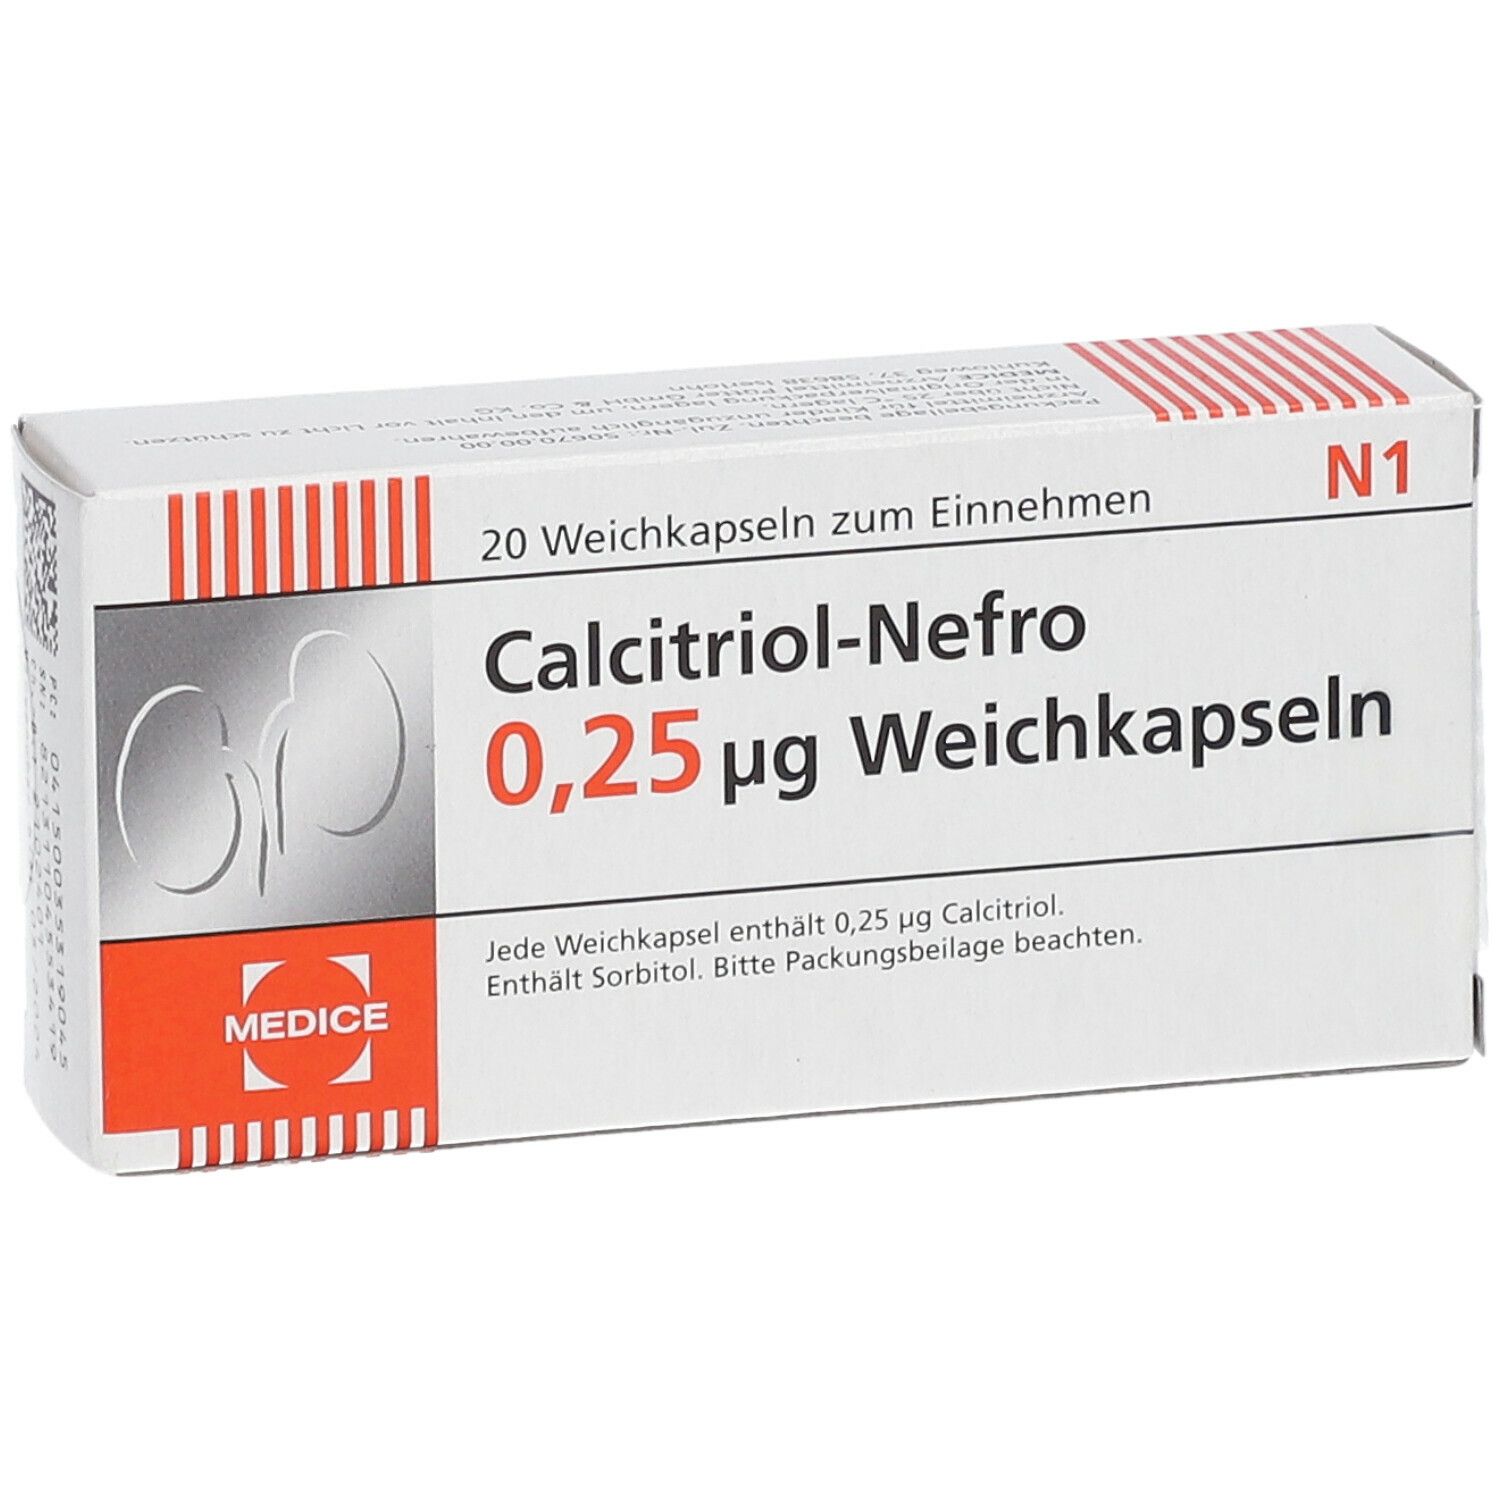 Calcitriol-Nefro 0,25 ug